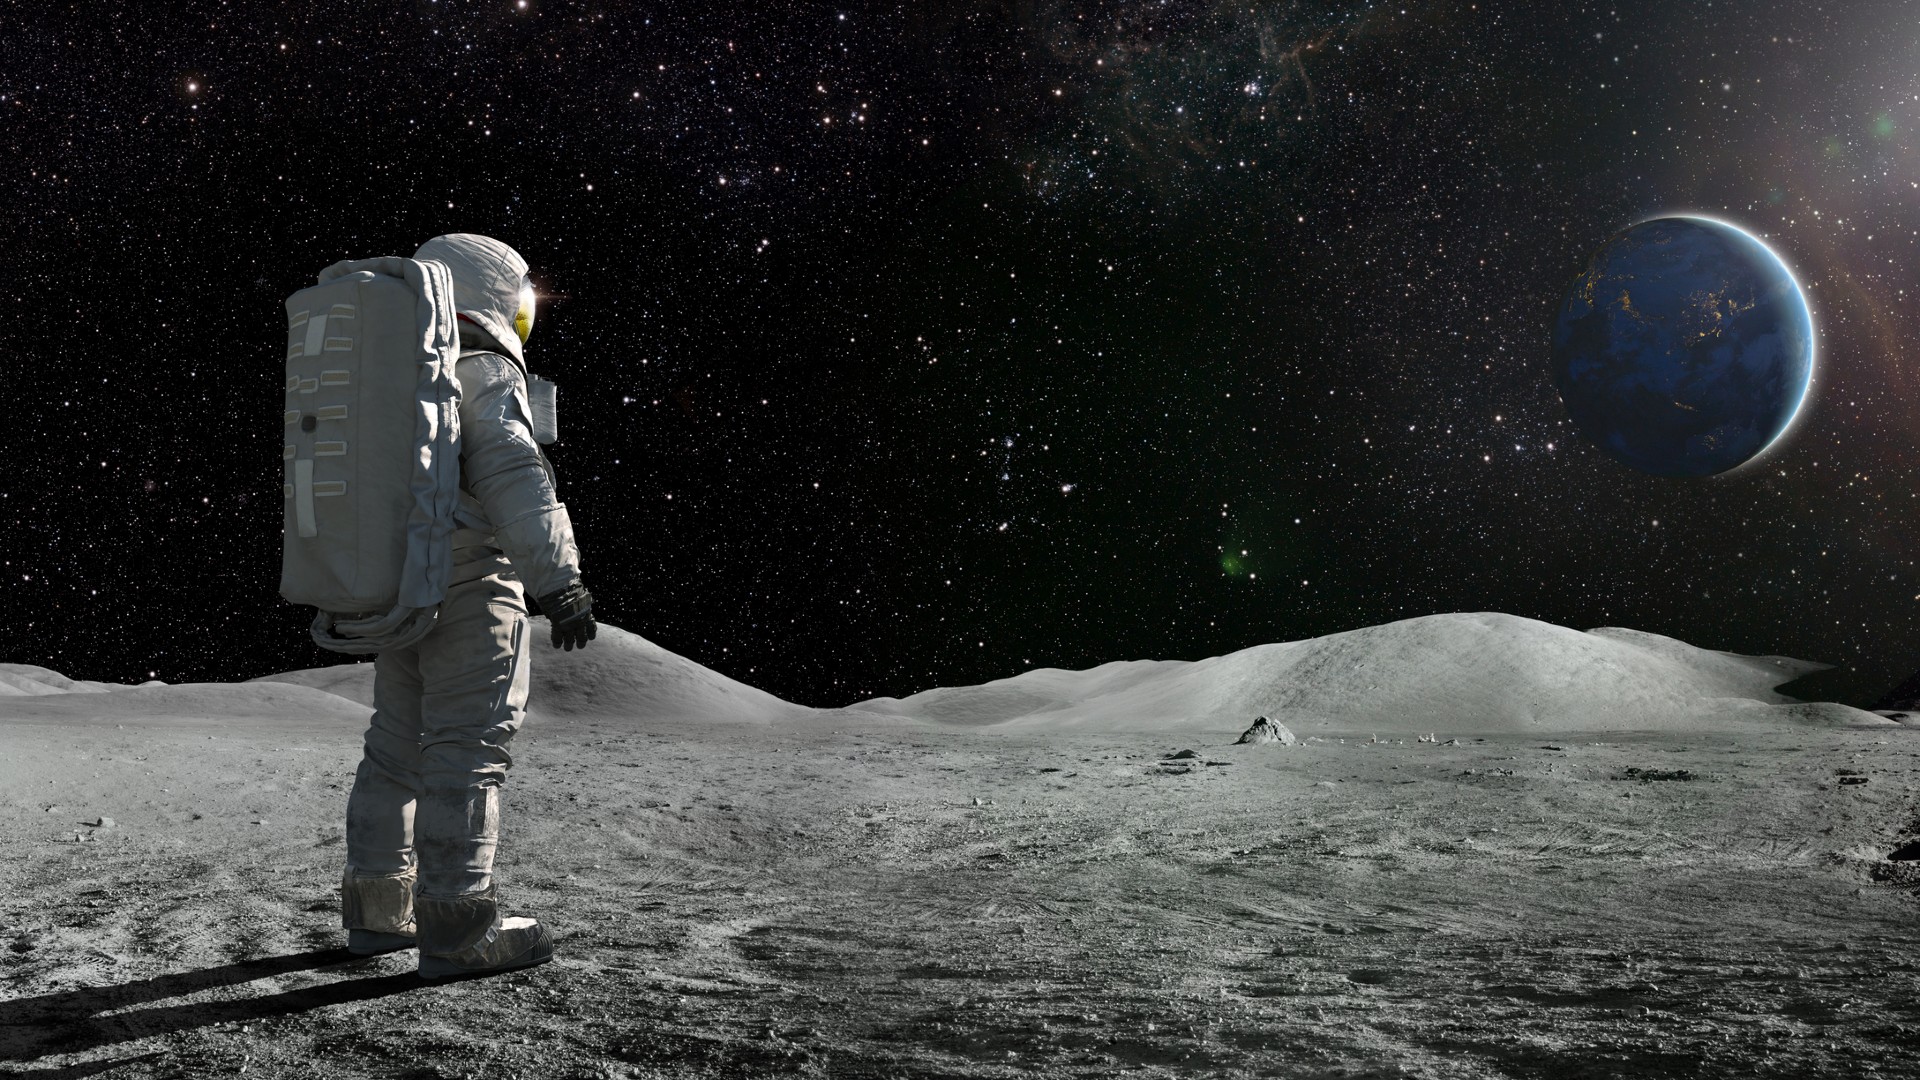 Les astronautes de la mission Artemis planteront des végétaux sur la lune en 2026